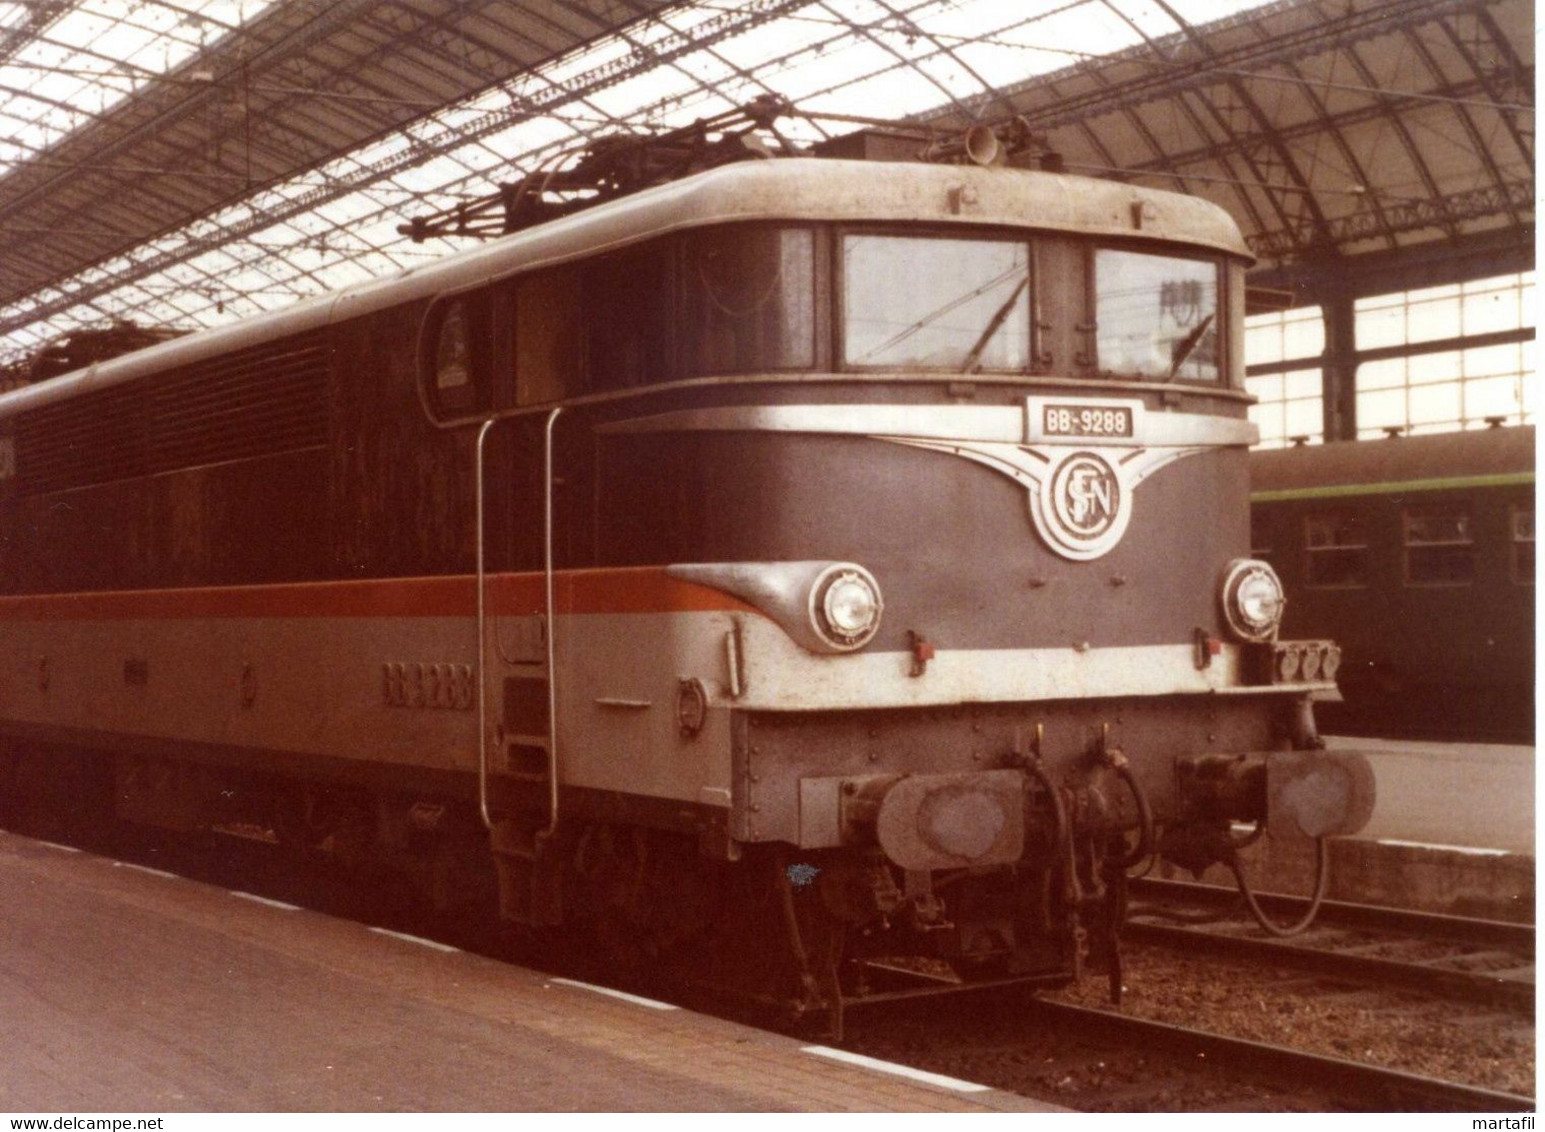 11.09.1979 Locomotiva Elettrica Francese SNCF BB 9200 BORDEAUX / Treni - Ferrovie - Trains - Trenes